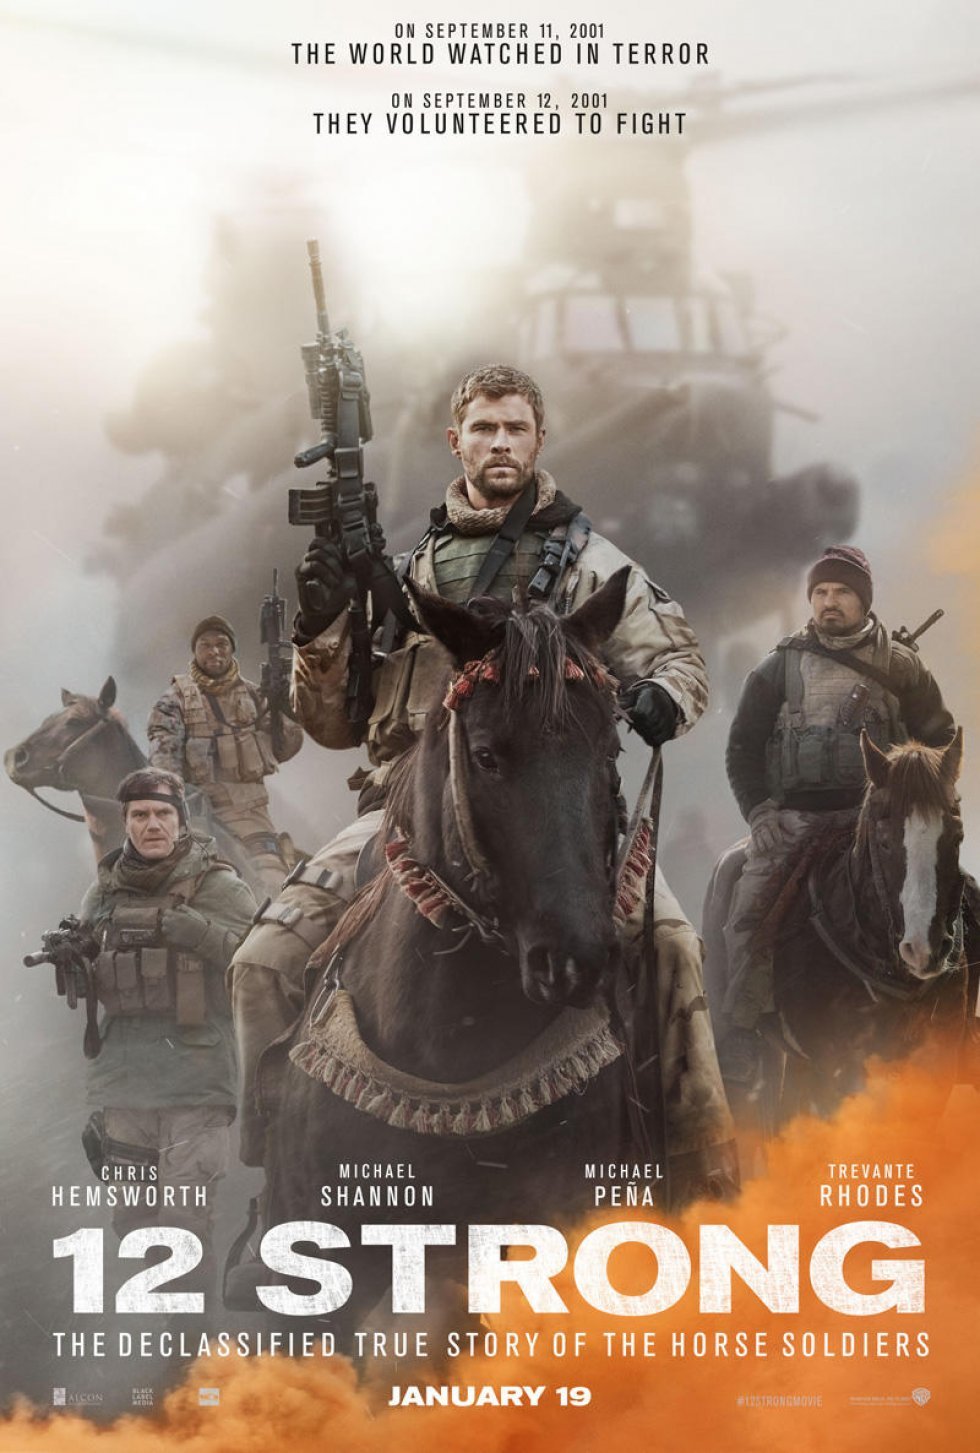 Chris Hemsworth spiller hovedrollen i 12 Strong, filmen om soldaterne der jagtede Al Qaeda i dagene efter 9/11